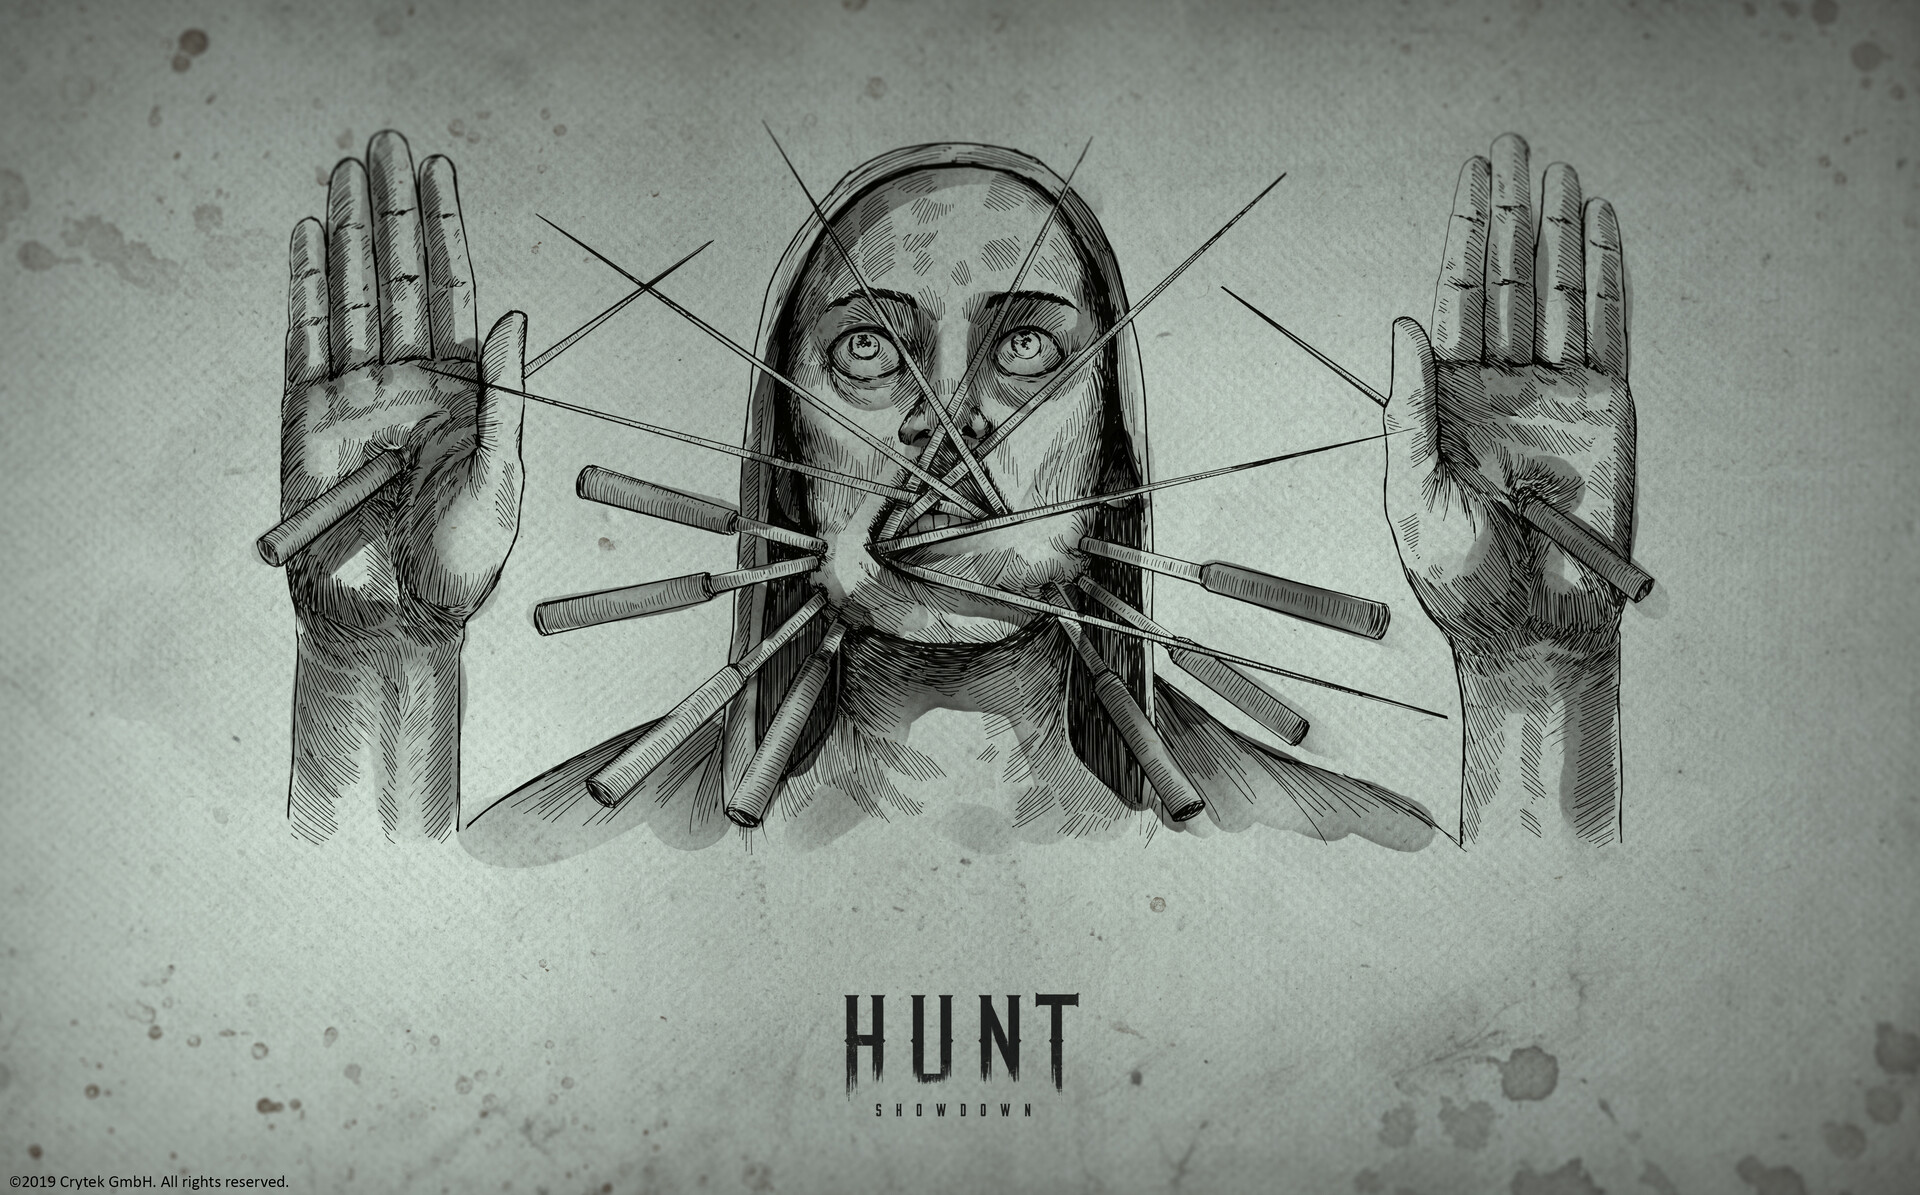 HUNT: Showdown - Hunt together. 